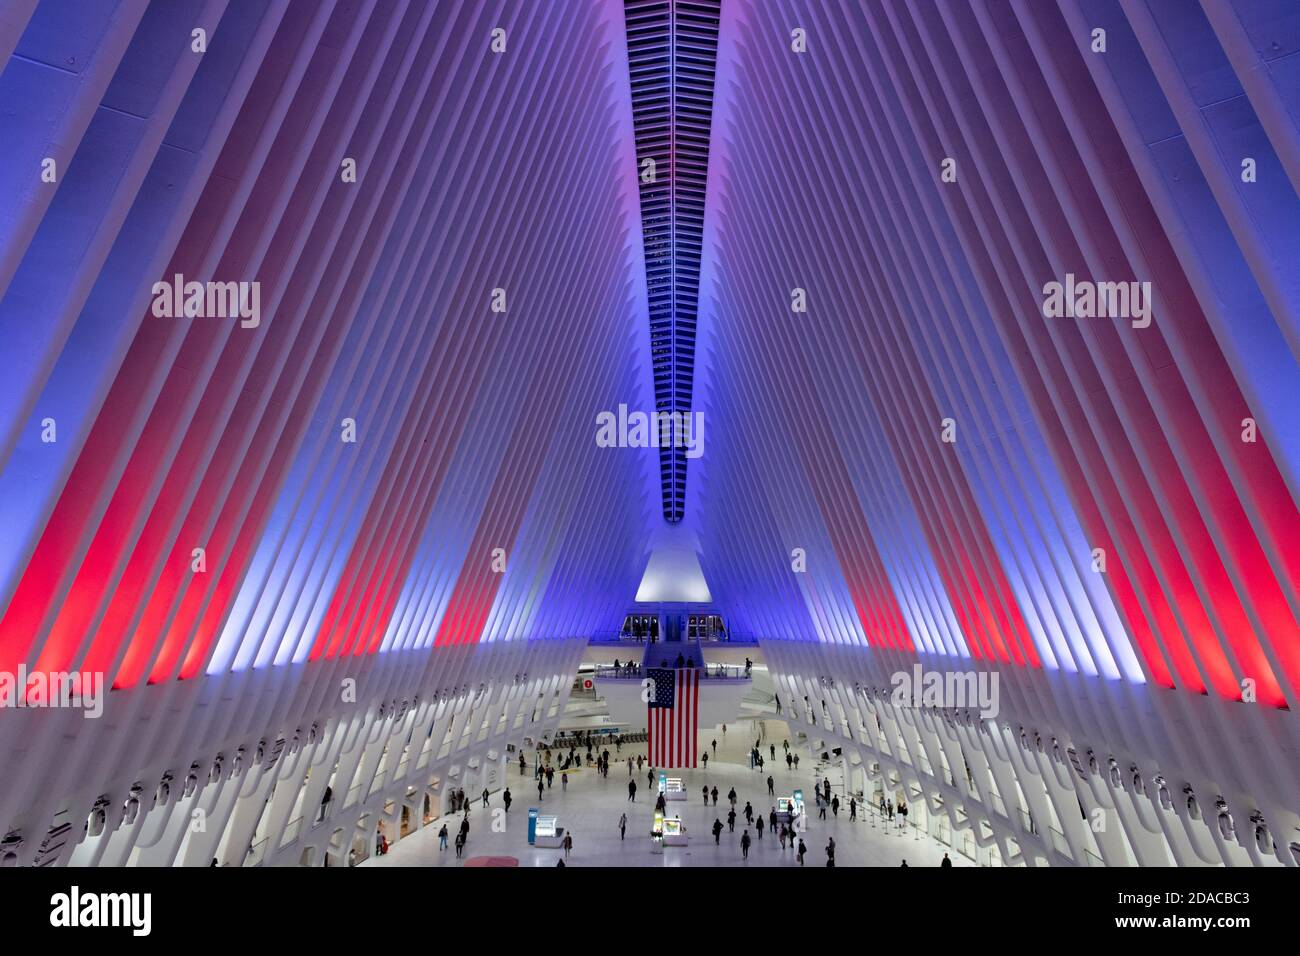 Der Oculus Transit Hub im One World Trade Center schaltet seine neuen LED-Leuchten in Rot, Weiß und Blau zu Ehren des Veterans Day am 10. November 2020 in N ein Stockfoto